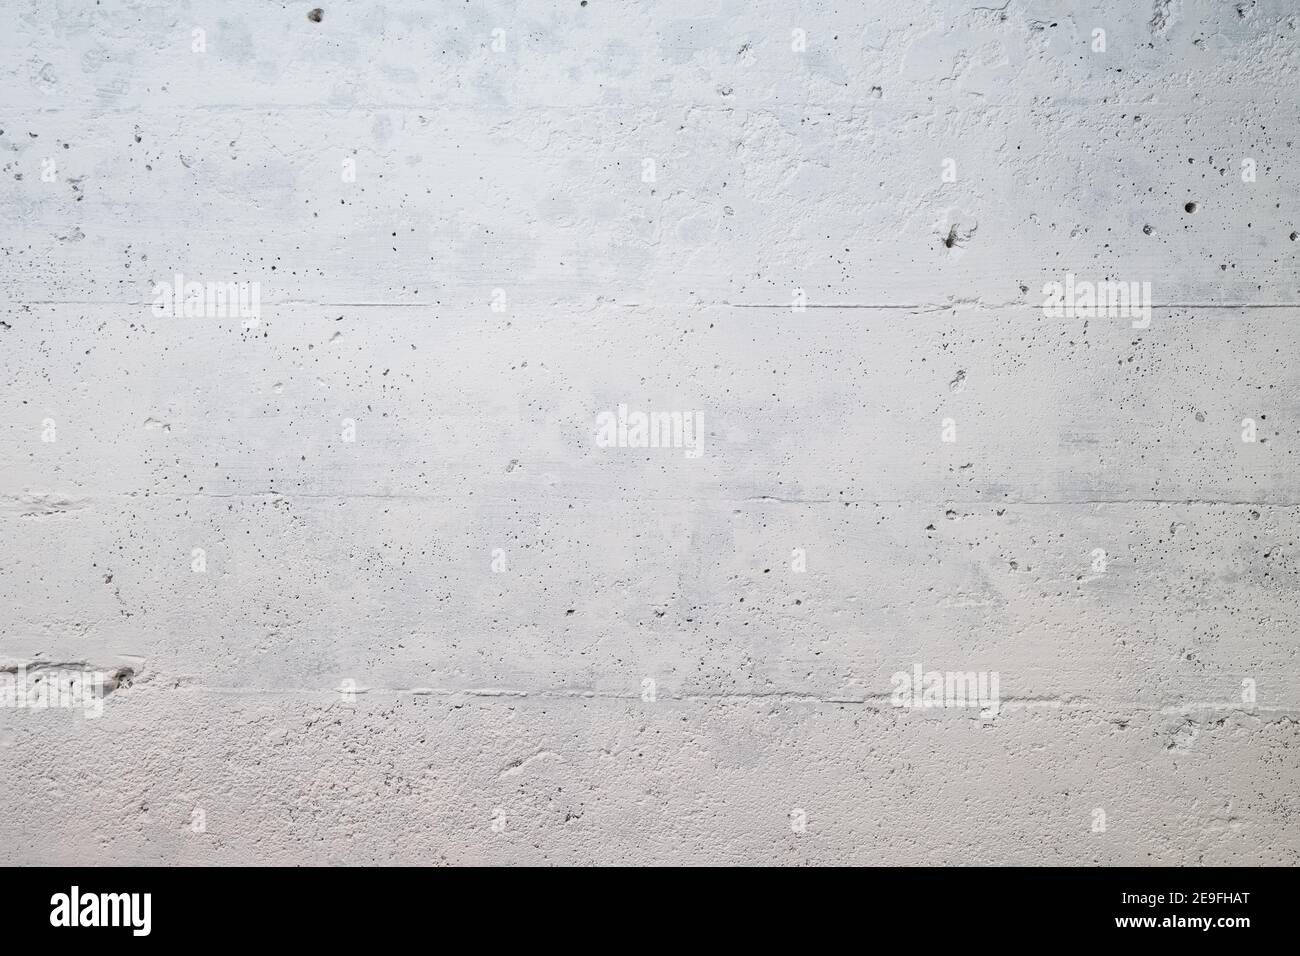 Photographie d'un mur en béton dans un sous-sol peint en blanc Banque D'Images